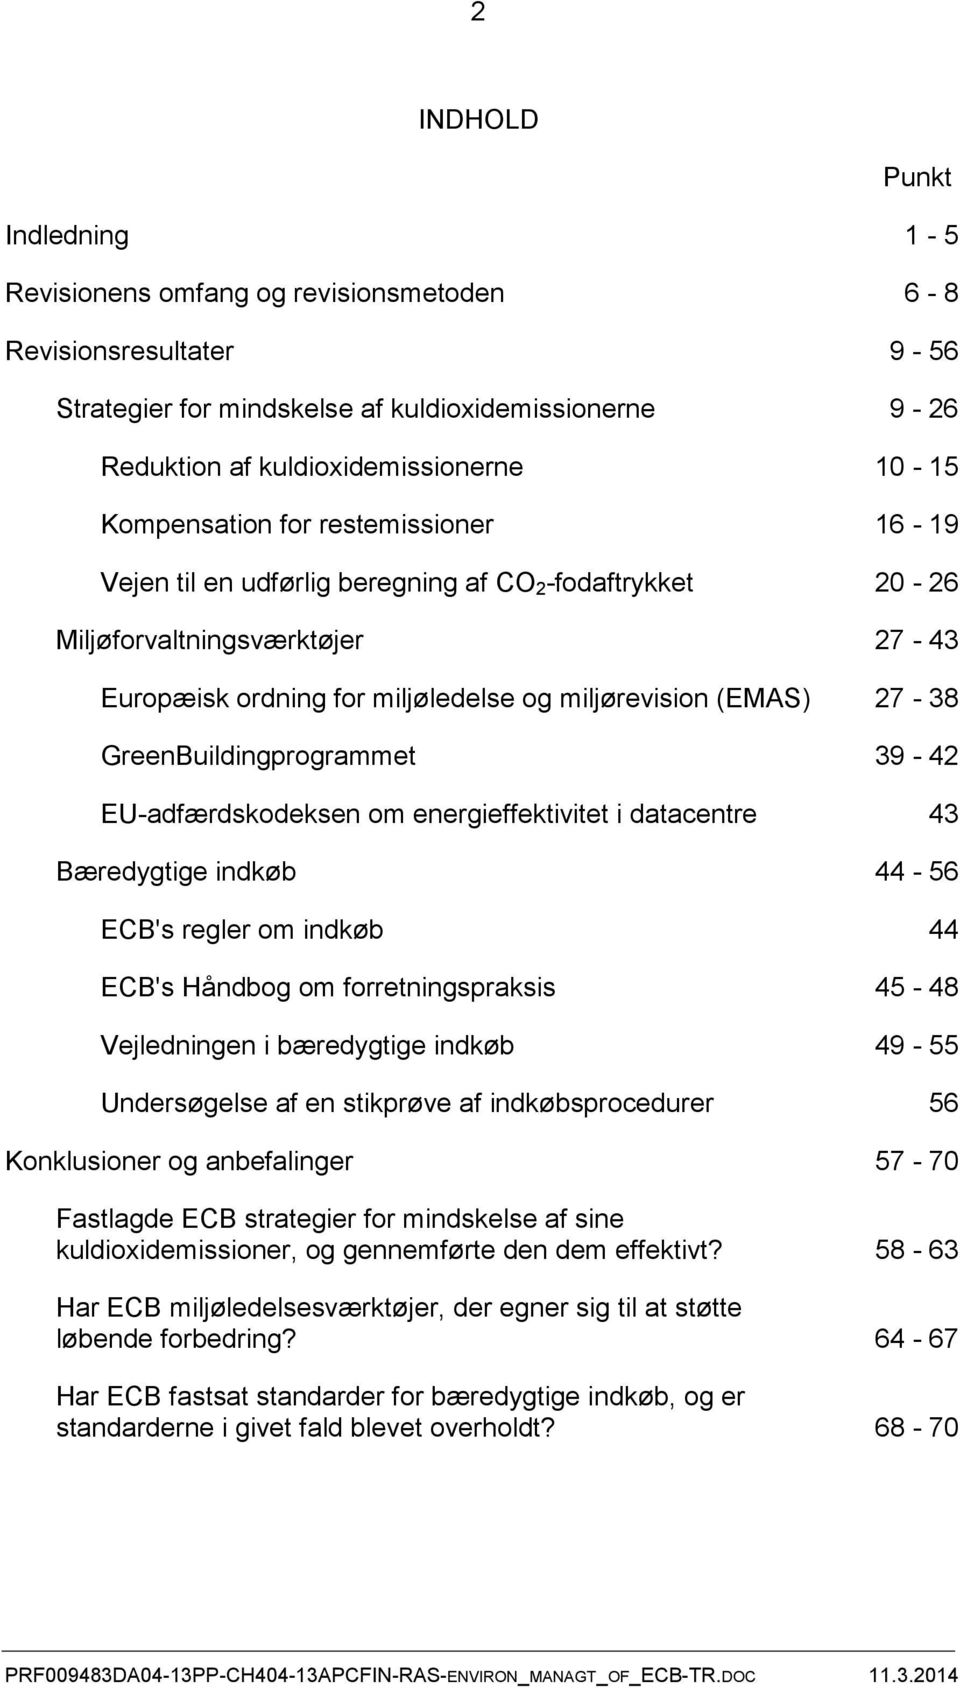 GreenBuildingprogrammet 39-42 EU-adfærdskodeksen om energieffektivitet i datacentre 43 Bæredygtige indkøb 44-56 ECB's regler om indkøb 44 ECB's Håndbog om forretningspraksis 45-48 Vejledningen i